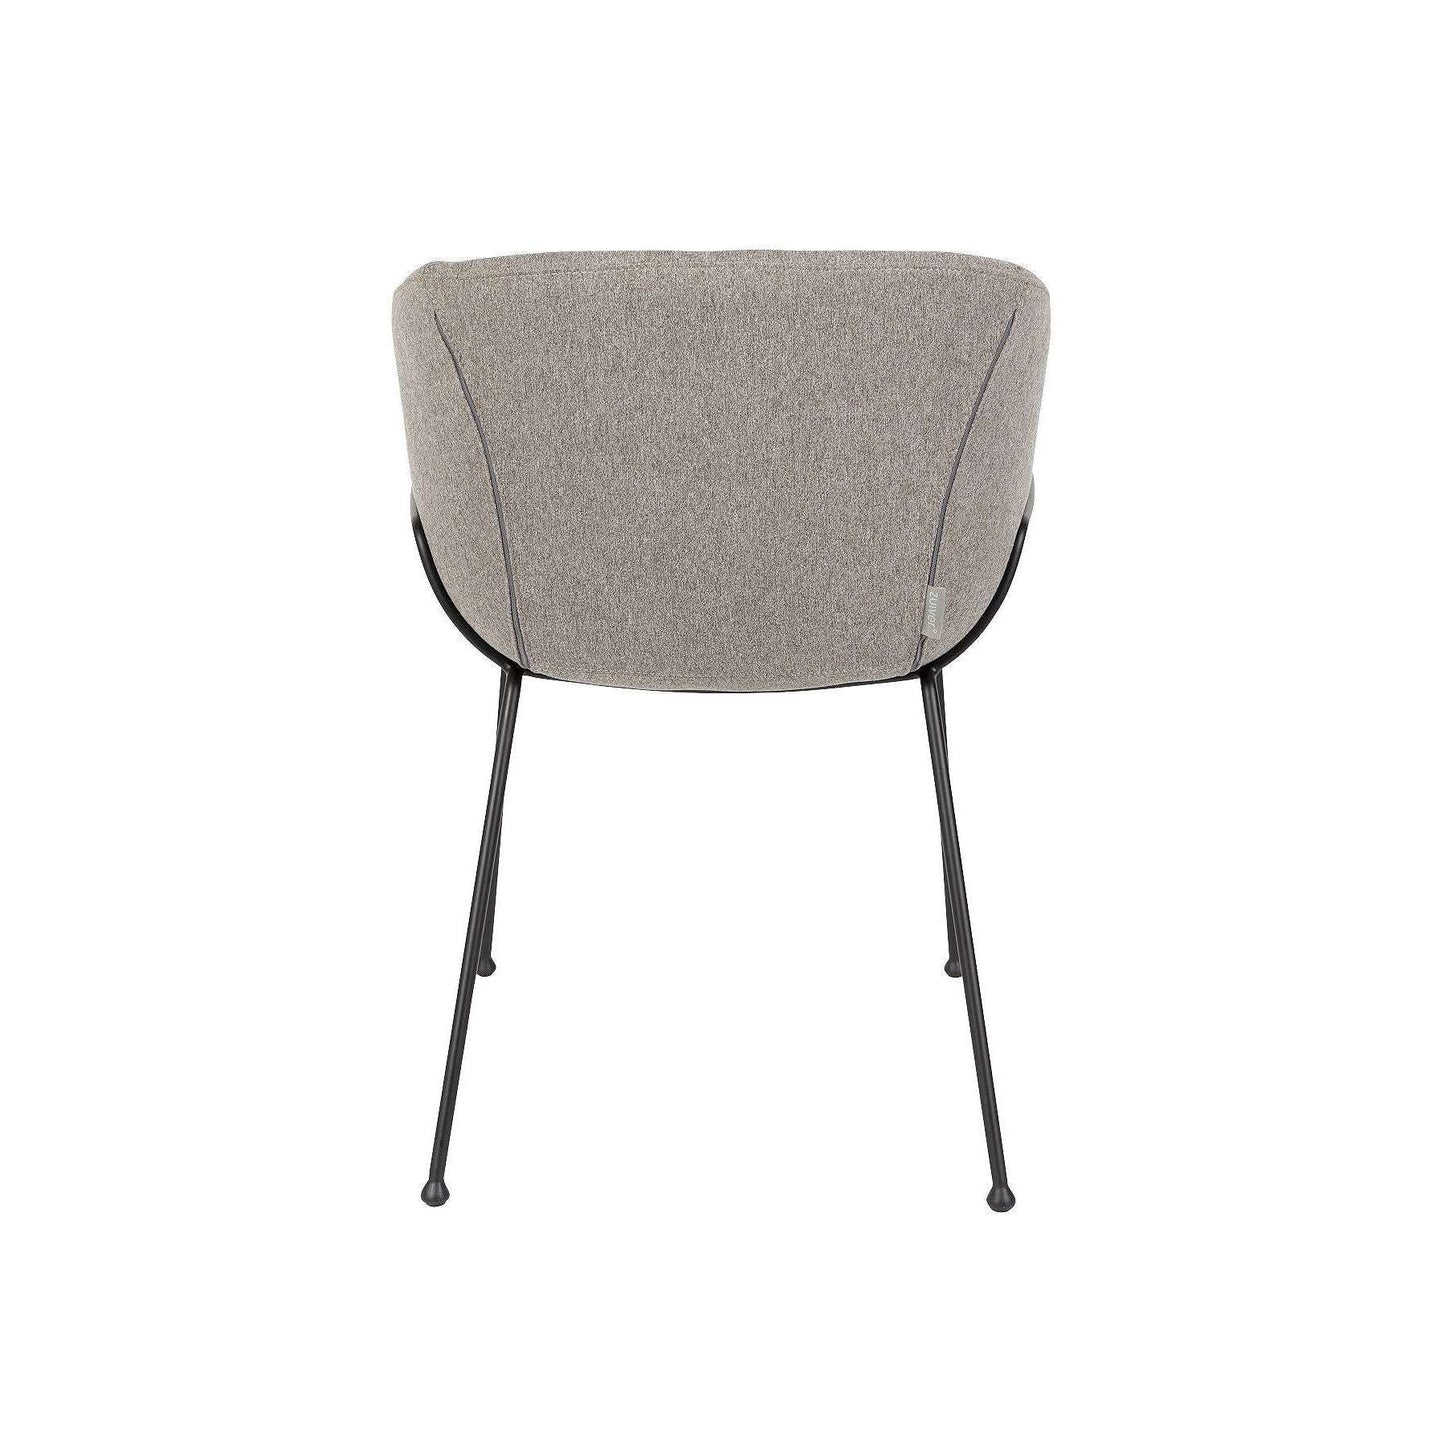 Zuiver stoel met armleuningen feston fab grijs 55 x 56,5 x 77 cm